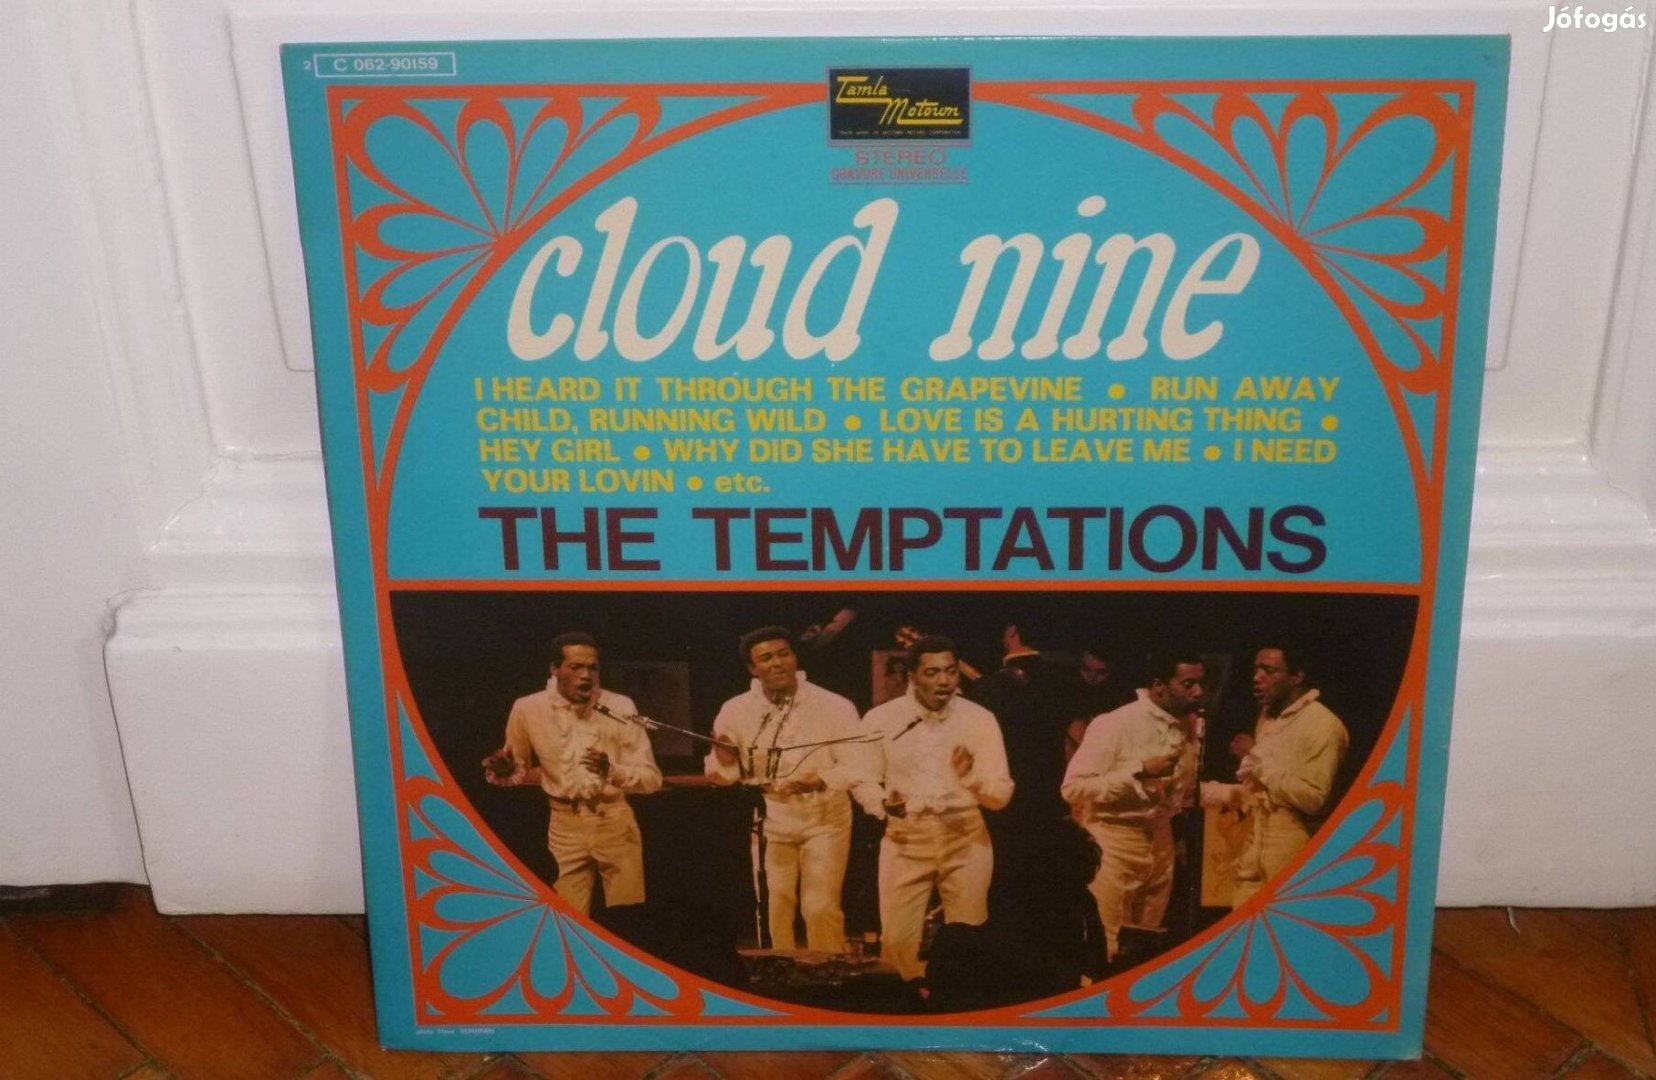 The Temptations - Cloud Nine LP 1969 France